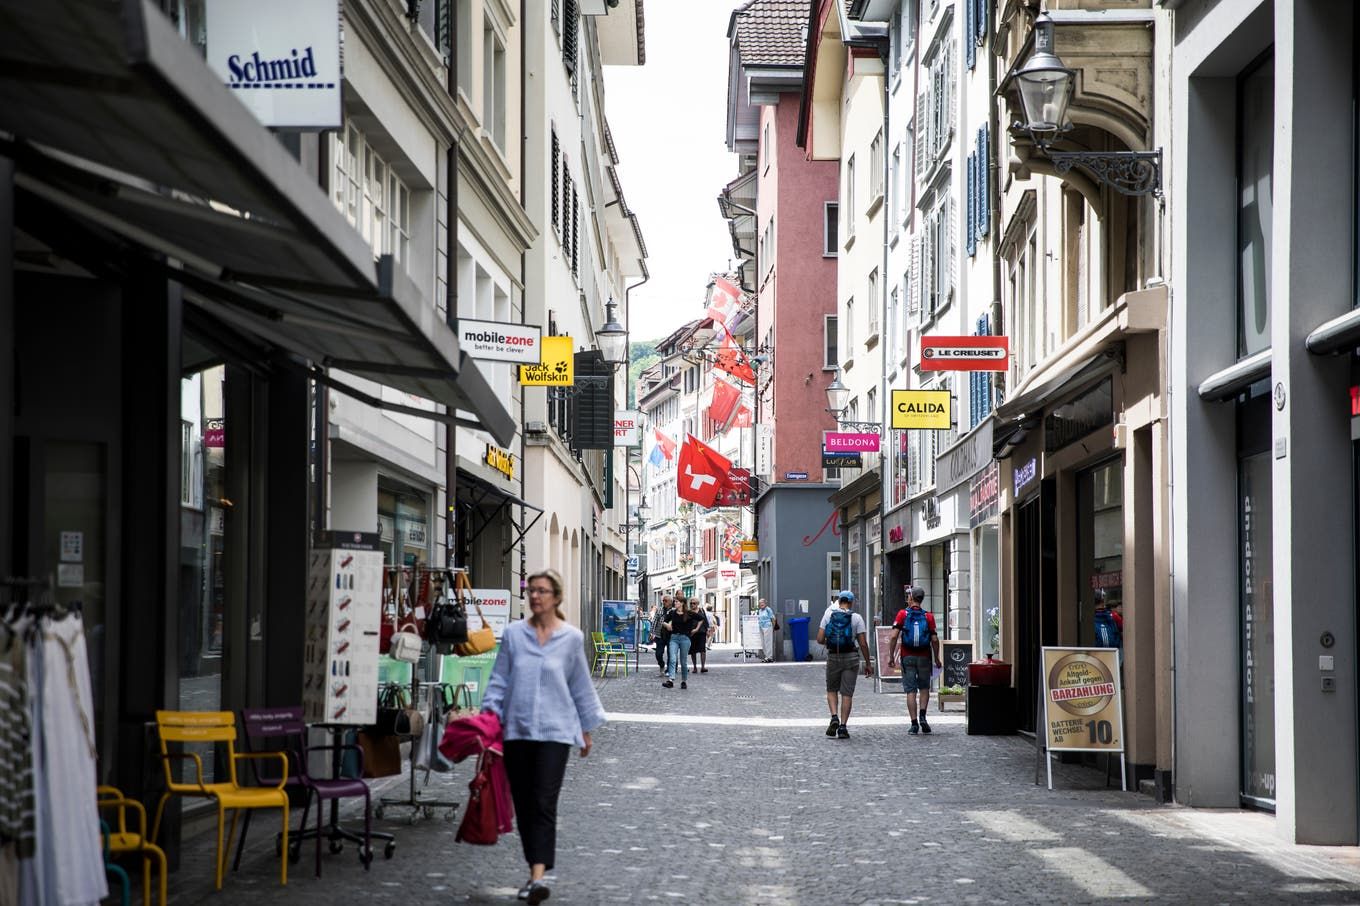 Etwas mehr Gastrobetriebe, etwas weniger Modeläden – so hat sich der Branchenmix in der Stadt Luzern verändert